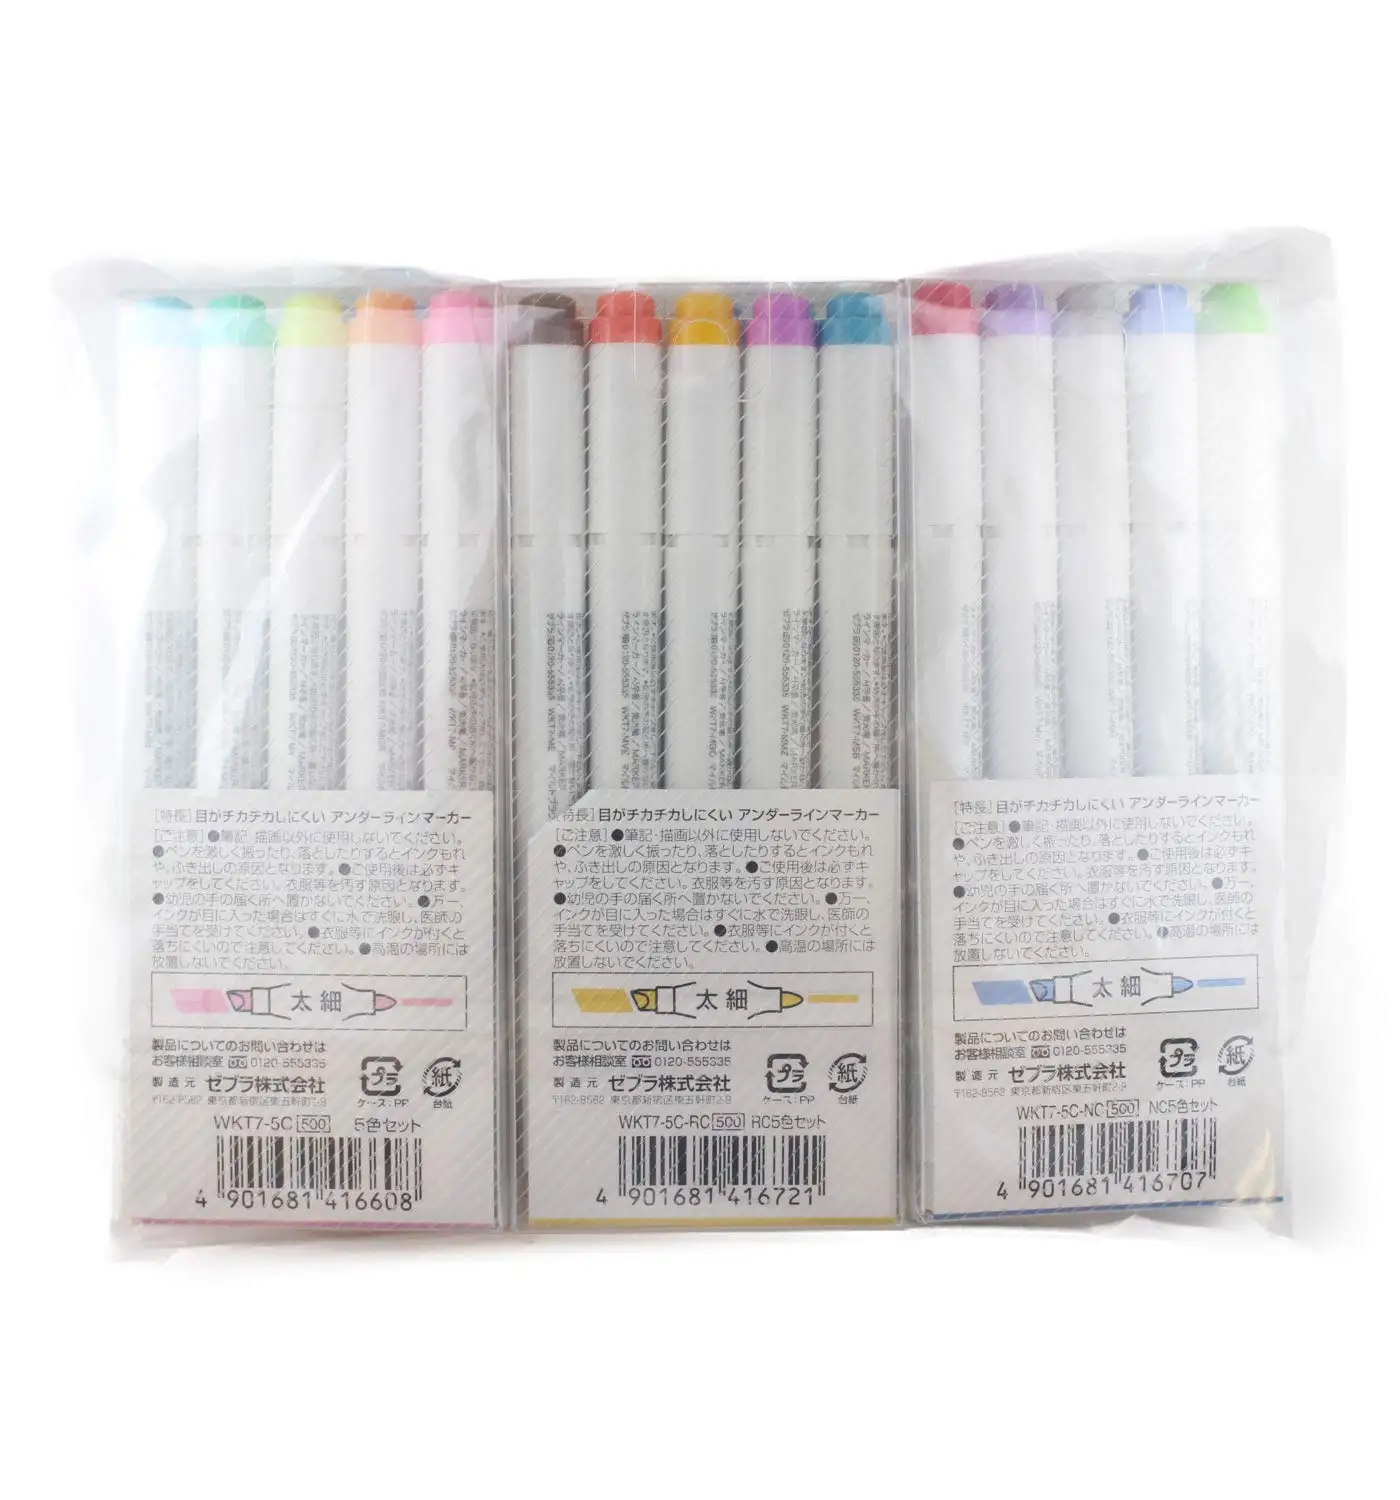 Zebra MILDLINER 5 упаковка(25 цветов) с японскими канцелярскими товарами оригинальная посылка [5C/RC/NC/N5C/HC] 10 новых цветов